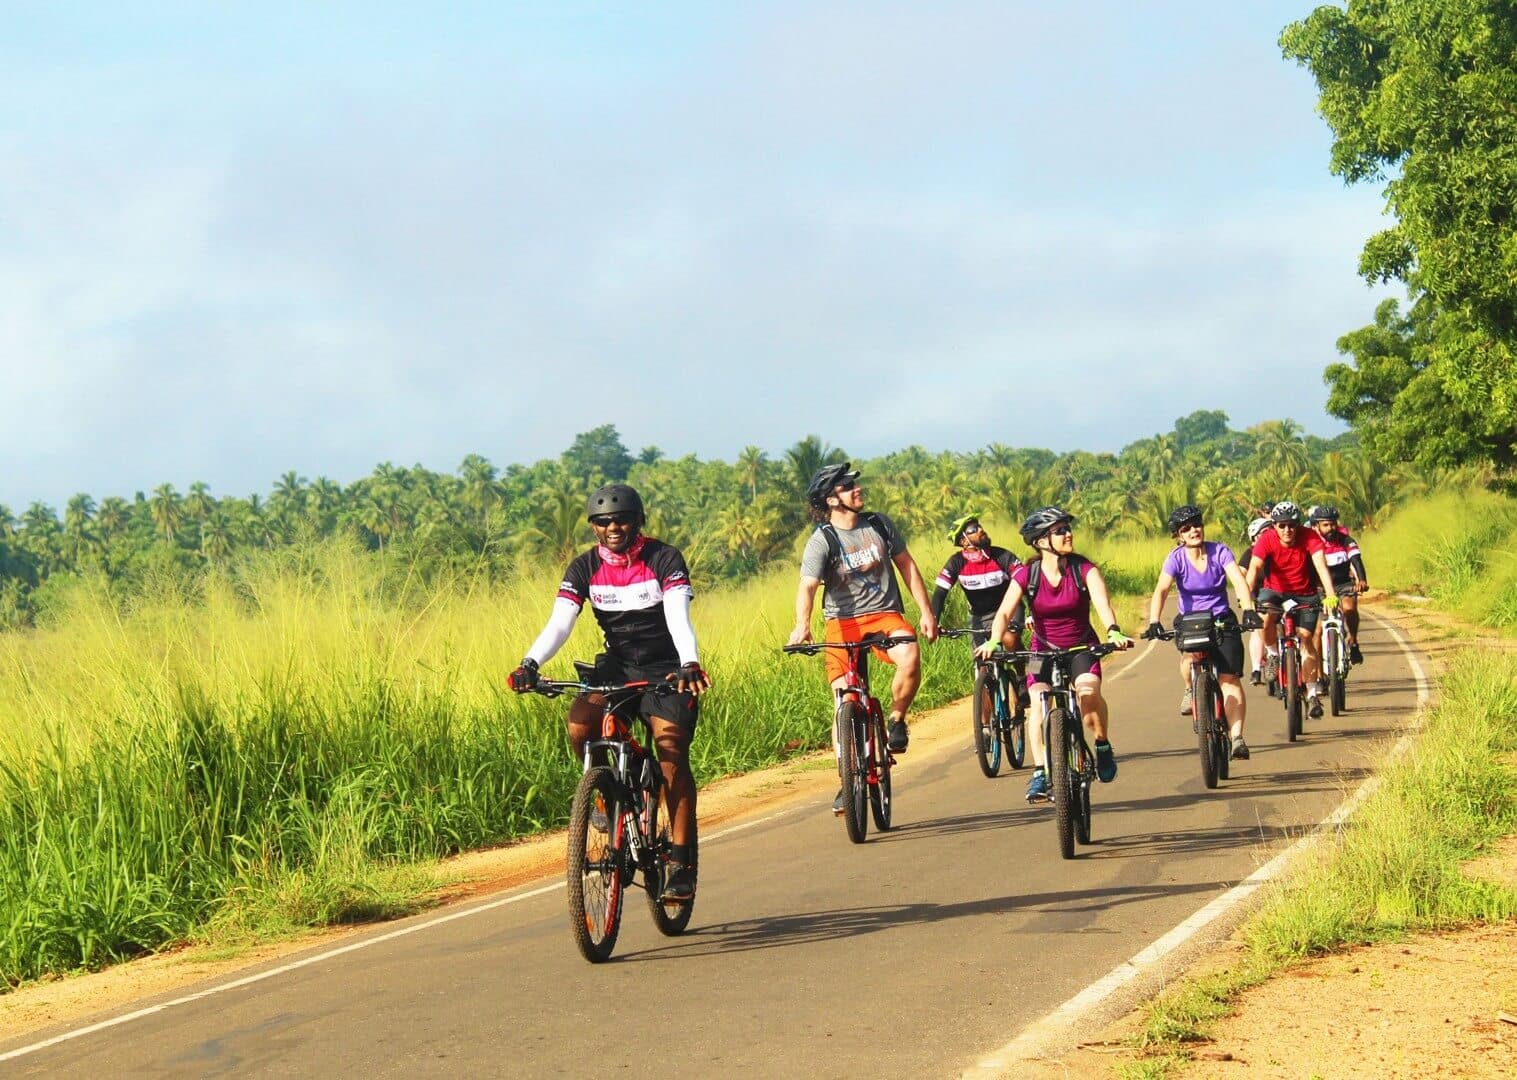 The cyclists watching beauty of nature Yala to Mirissa tour Sri Lanka